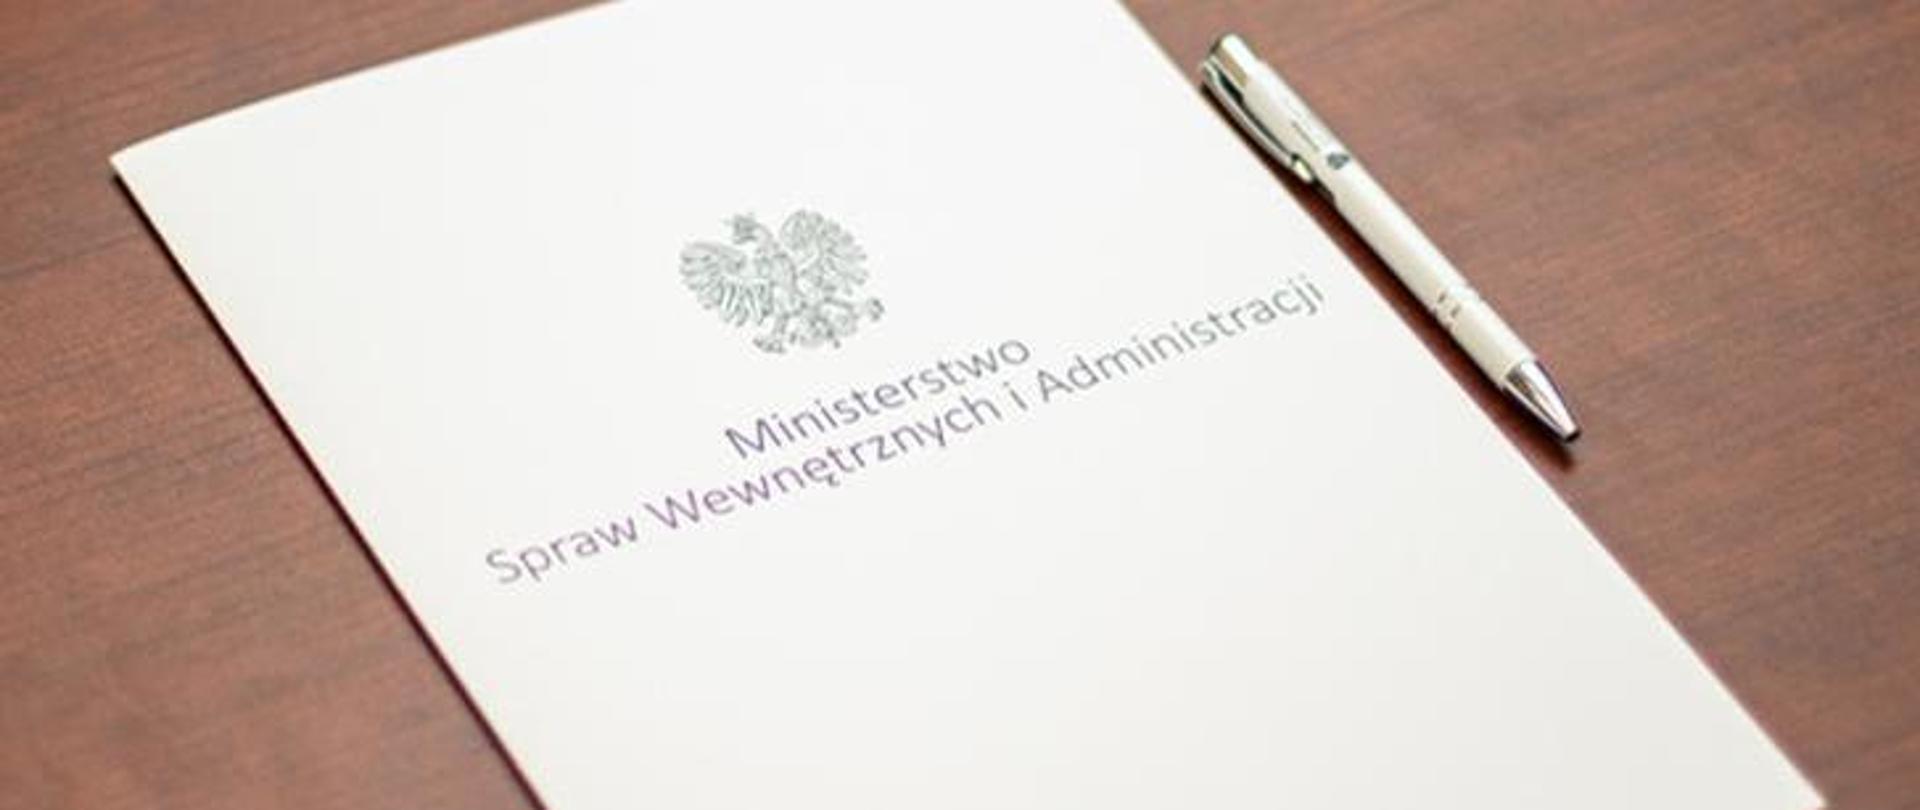 Biała teczka z napisem Mnisterstwo spraw wewnetrznych i administracji oraz długopis na stole